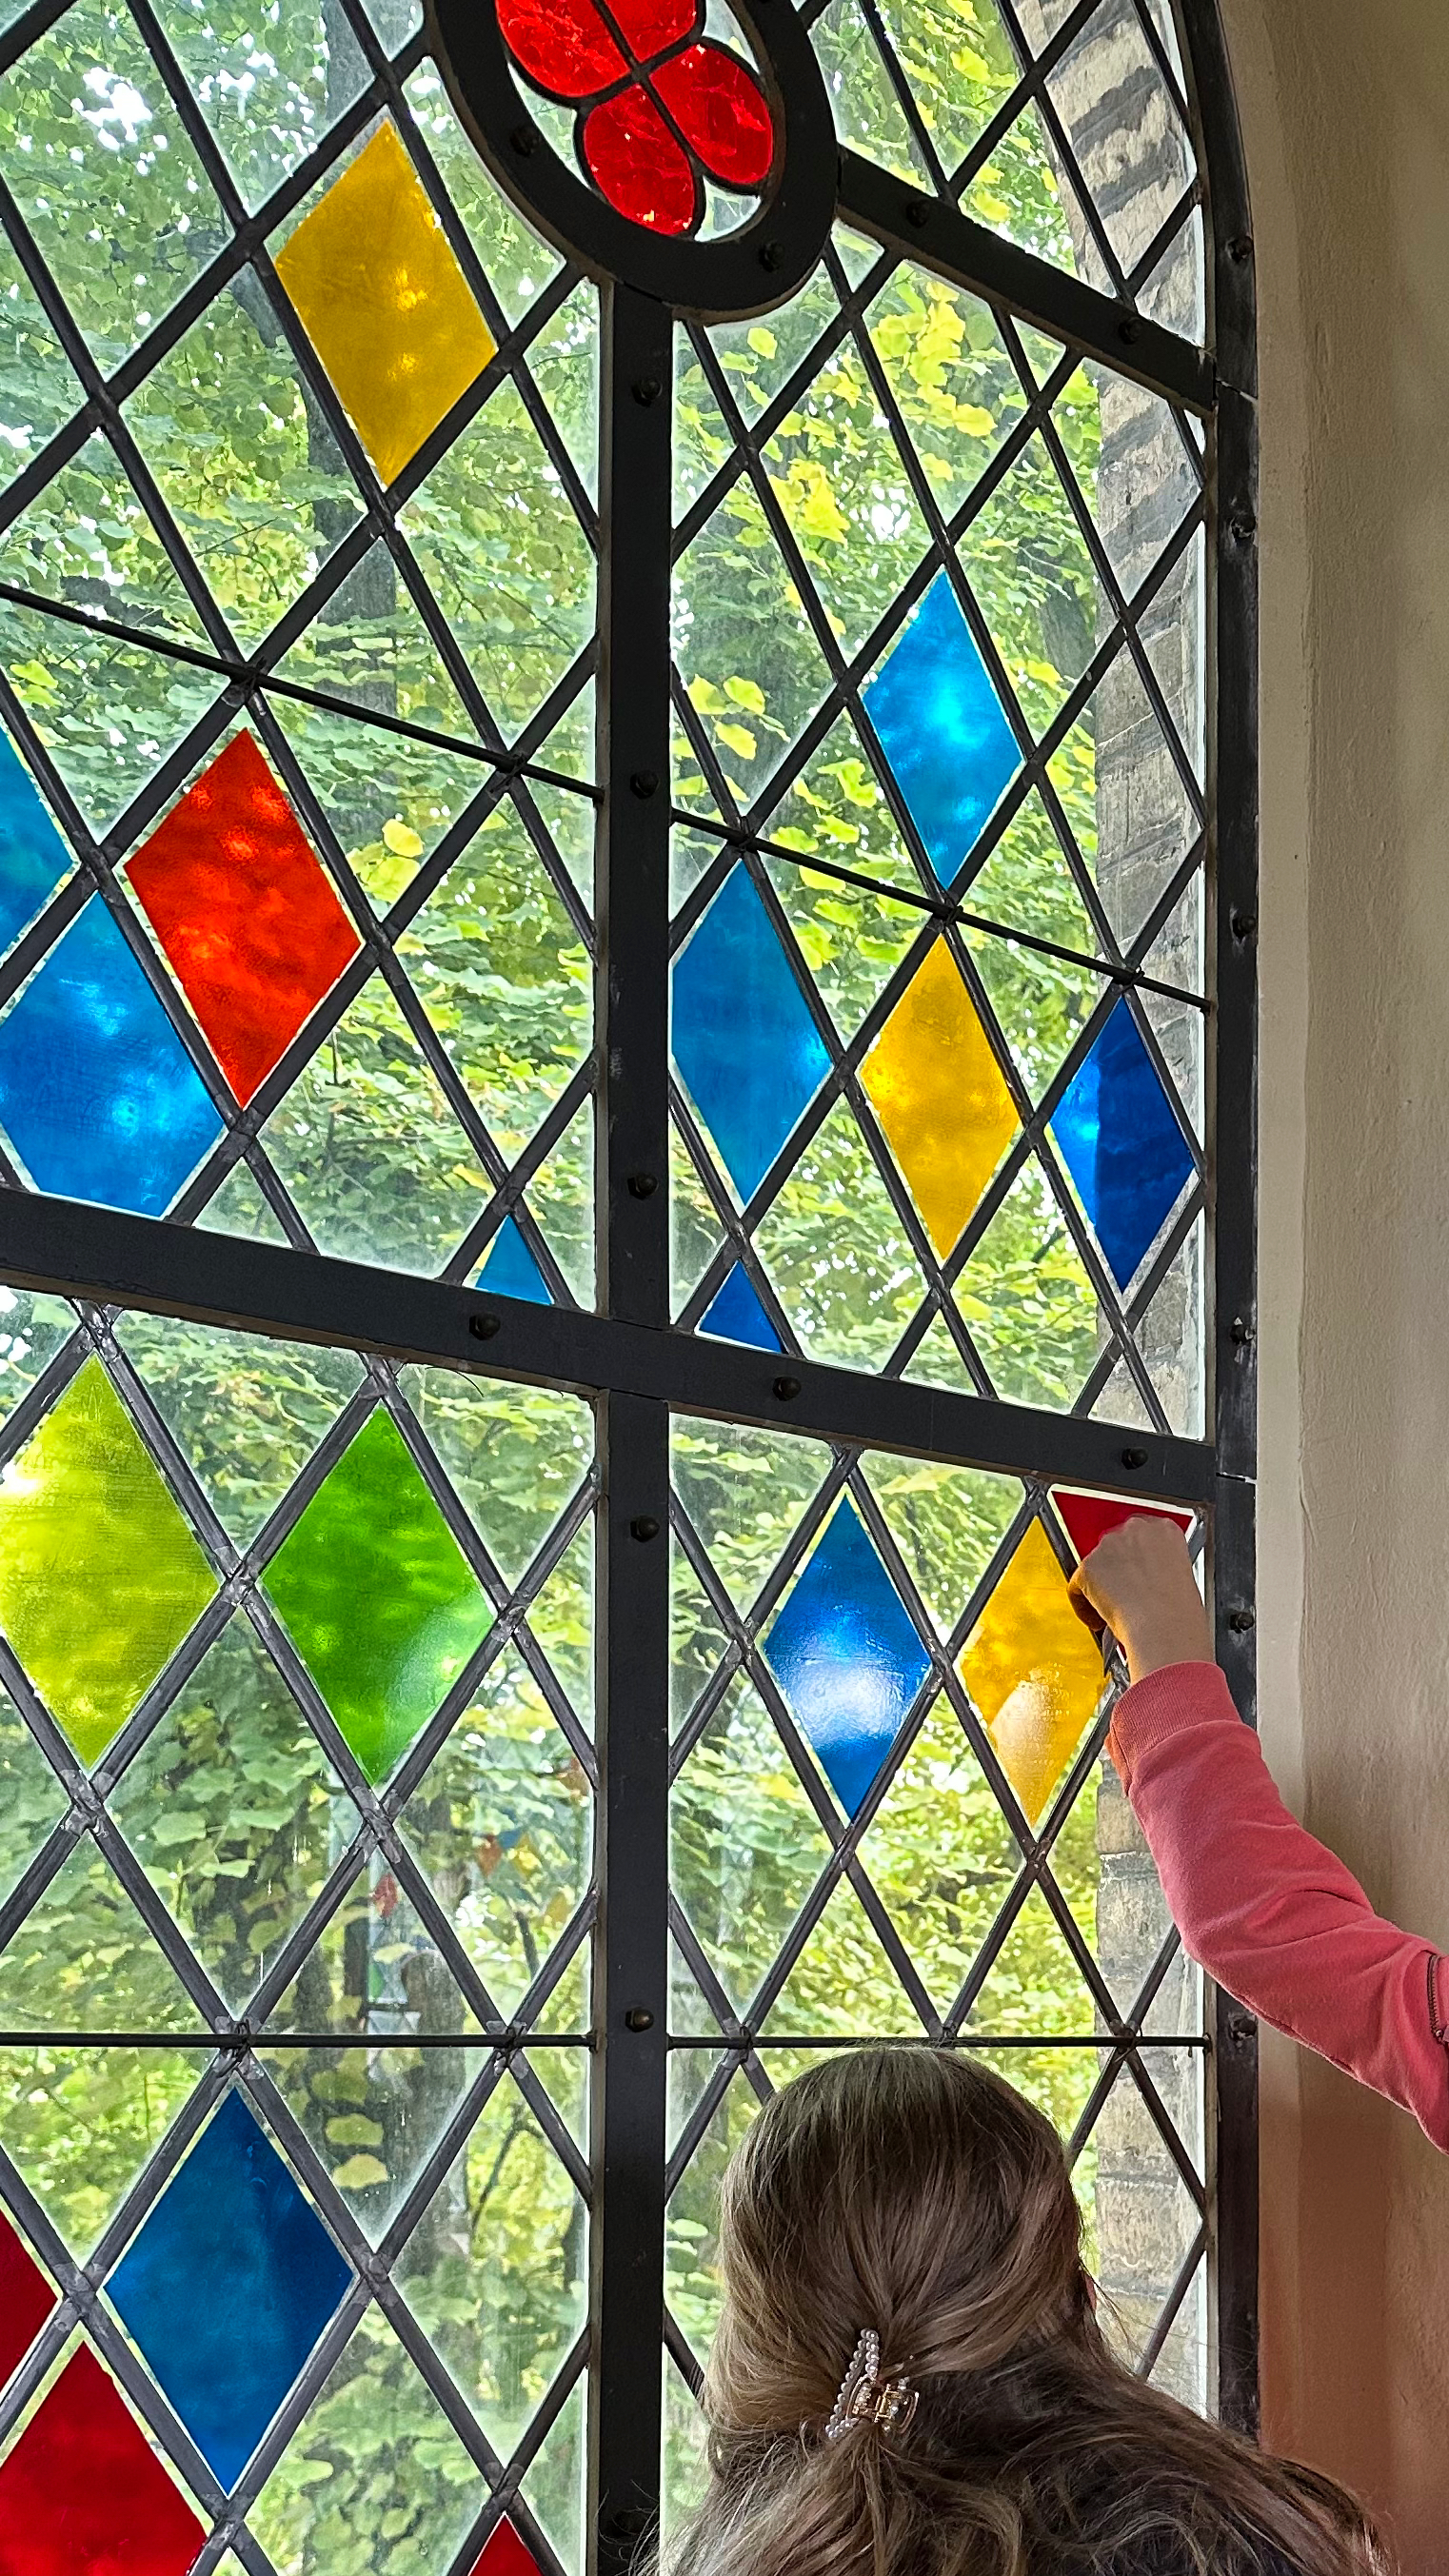 Fenster der Glindower Kirche gestaltet